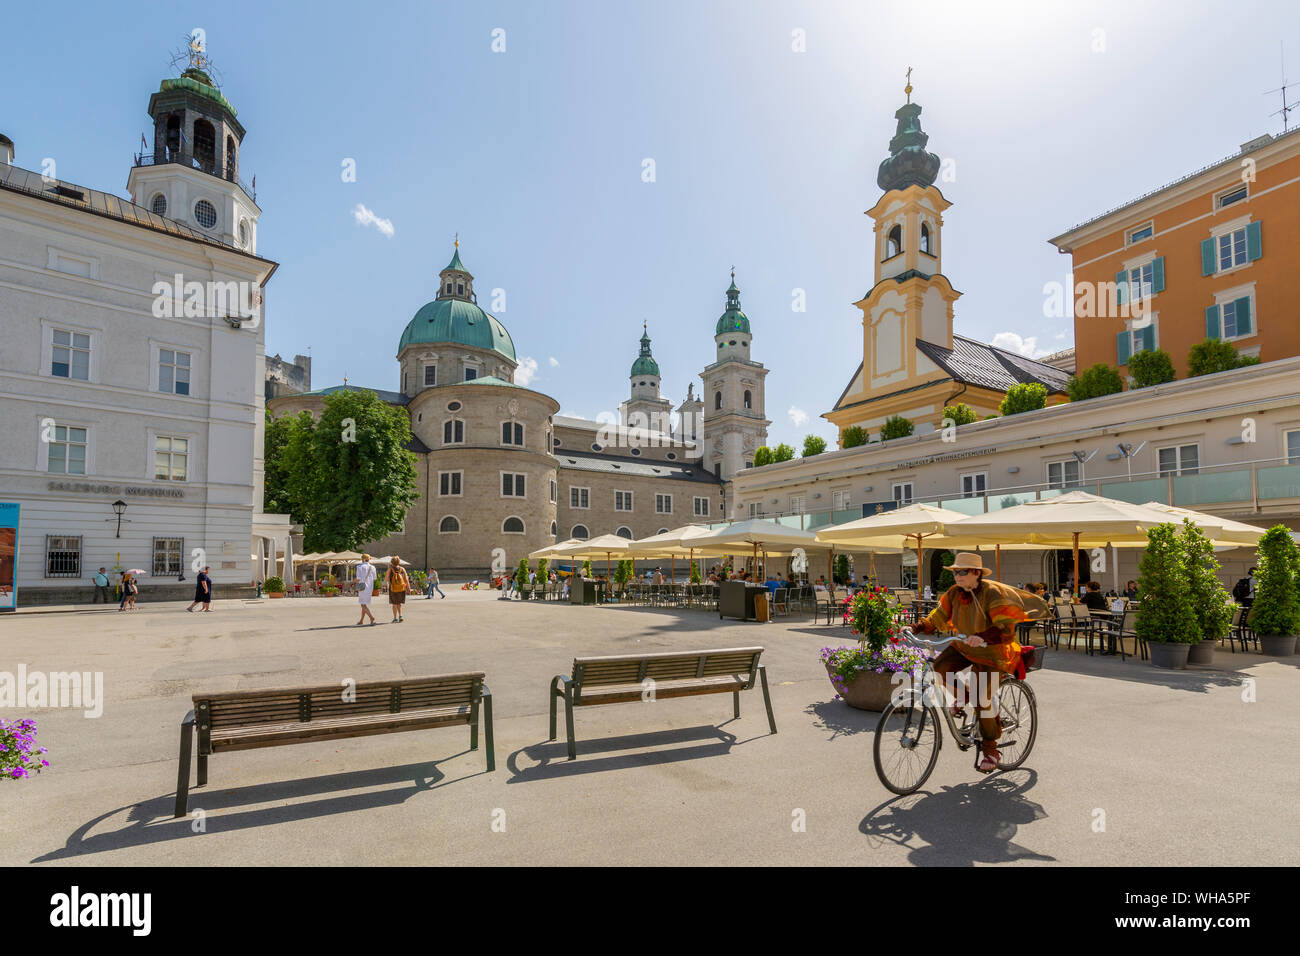 Avis de cycliste et cathédrale de Salzbourg dans Residenzplatz, Salzburg, Autriche, Europe Banque D'Images